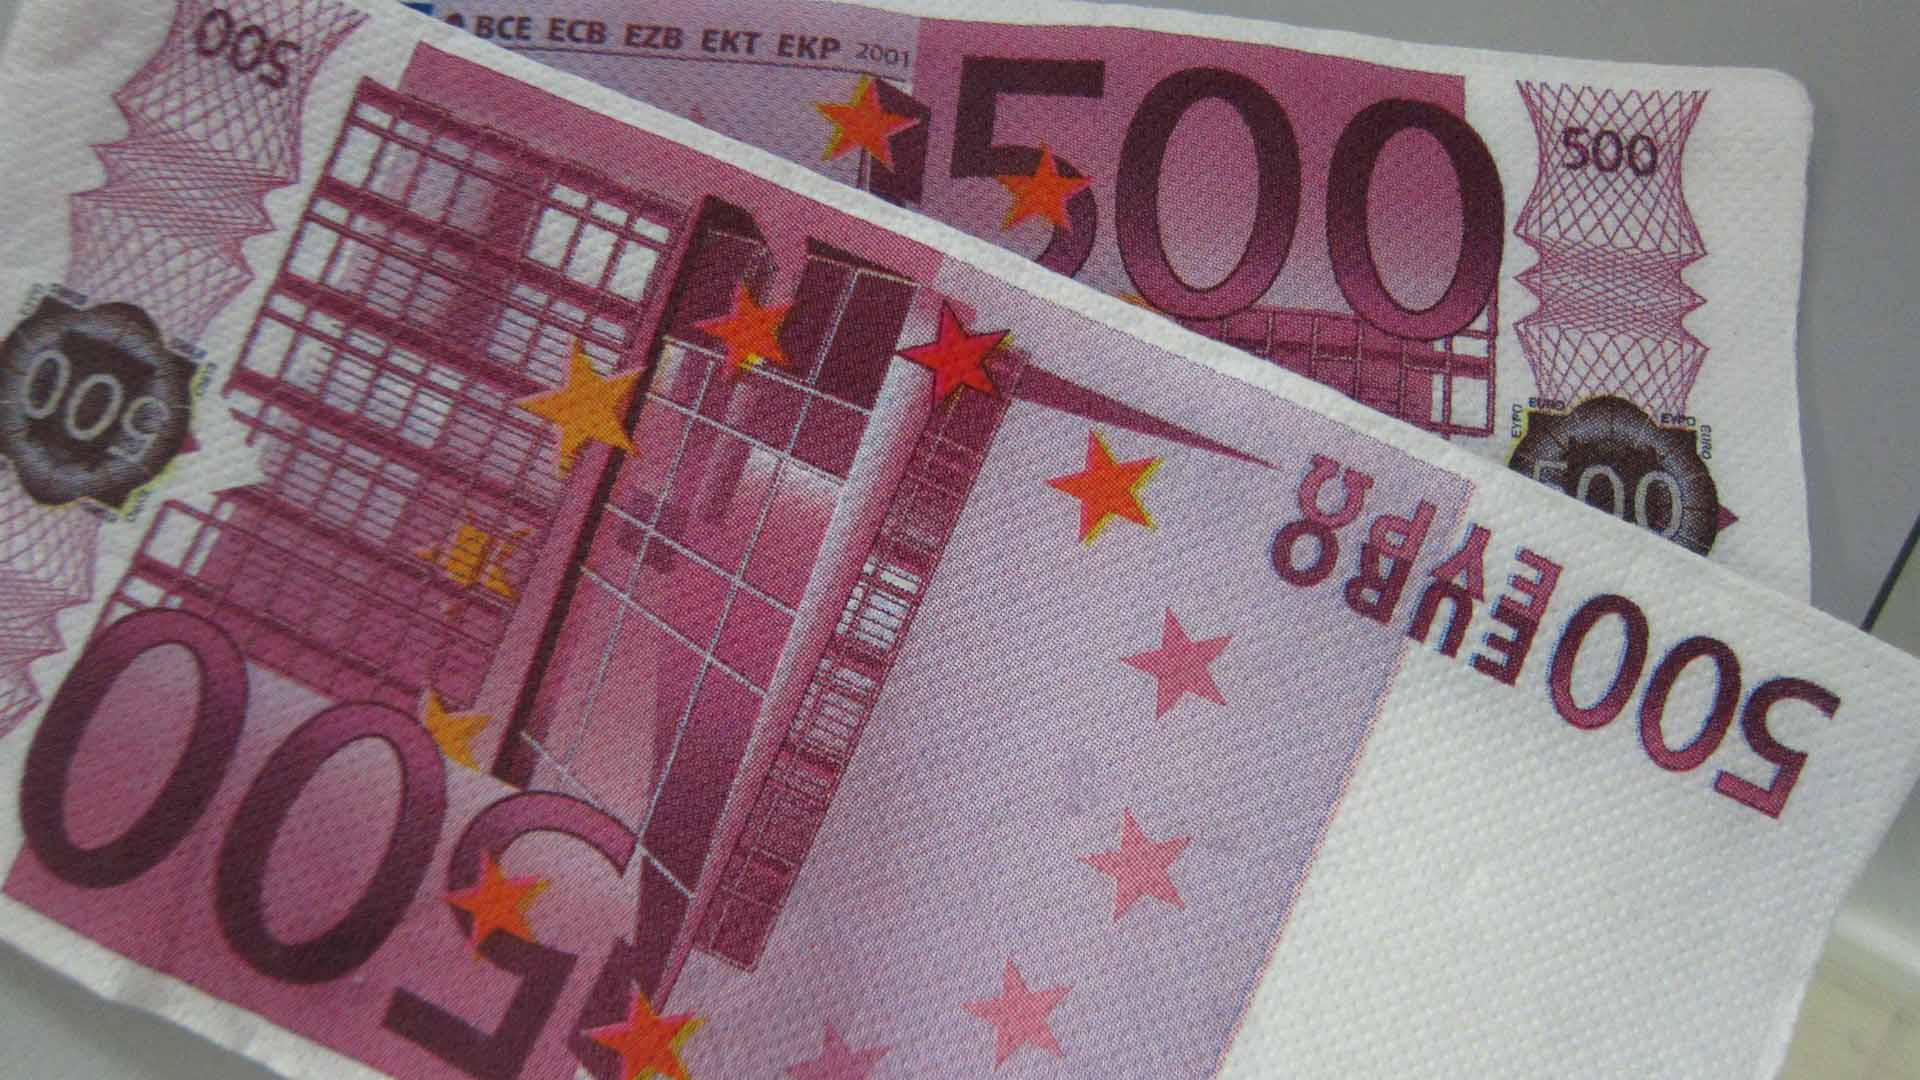 El número de billetes de 500 euros se hunde en septiembre a mínimos desde 2002